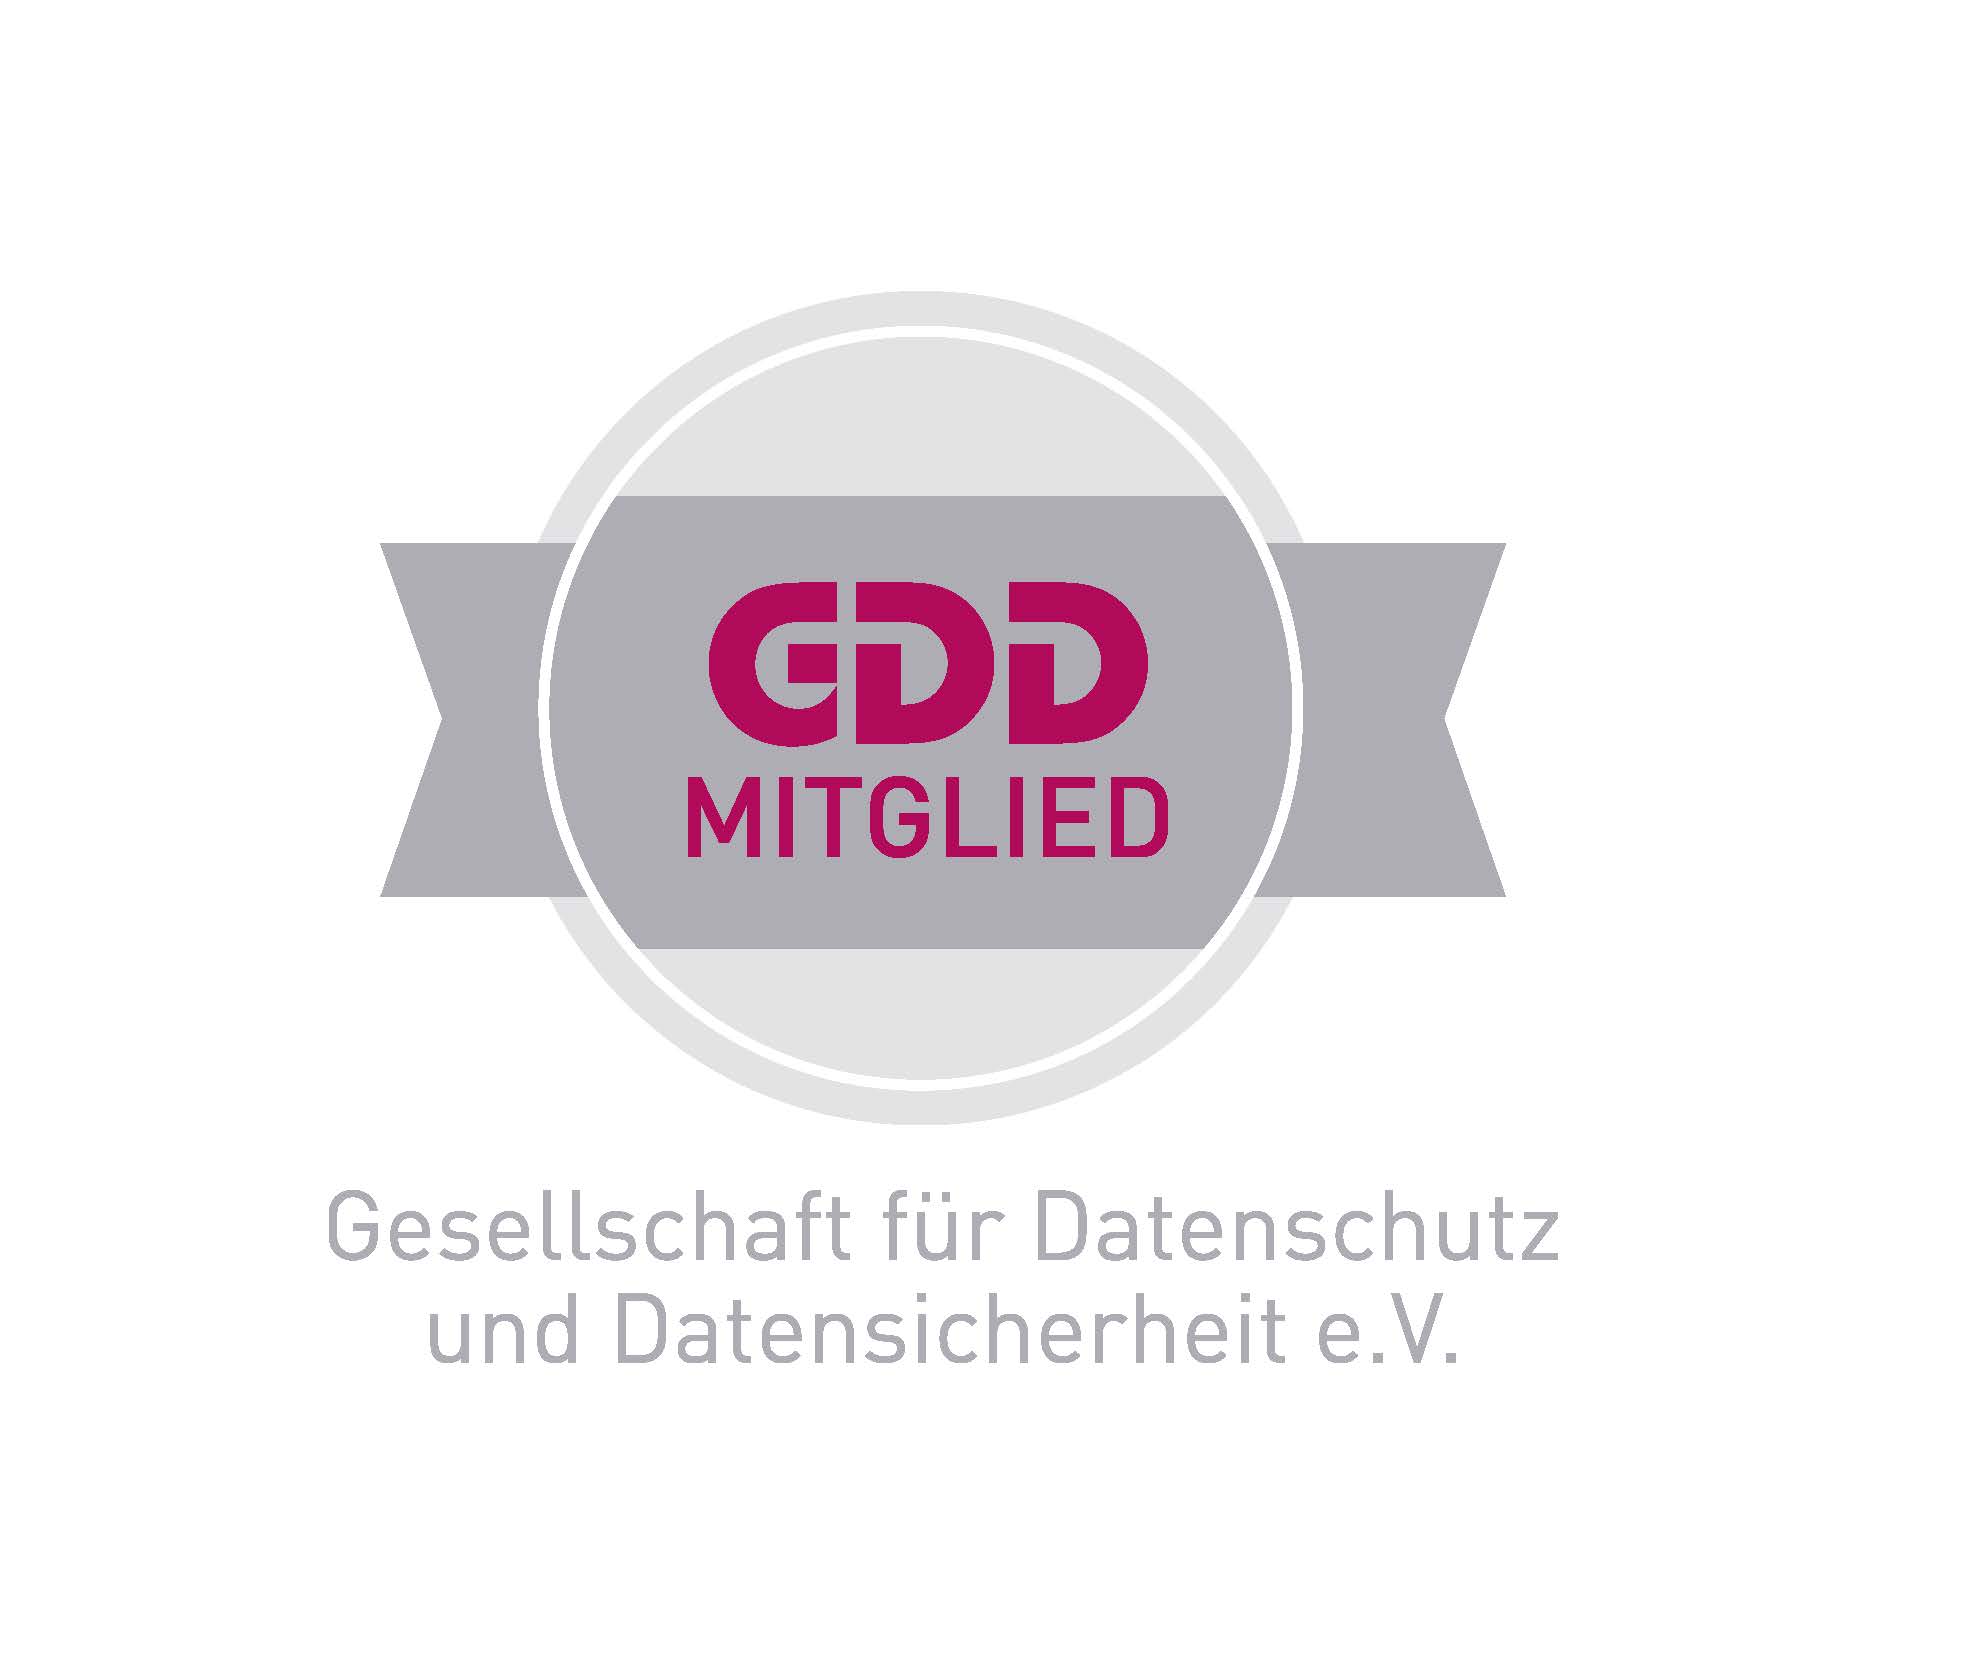 Christian Schröder ist GDD Mitglied